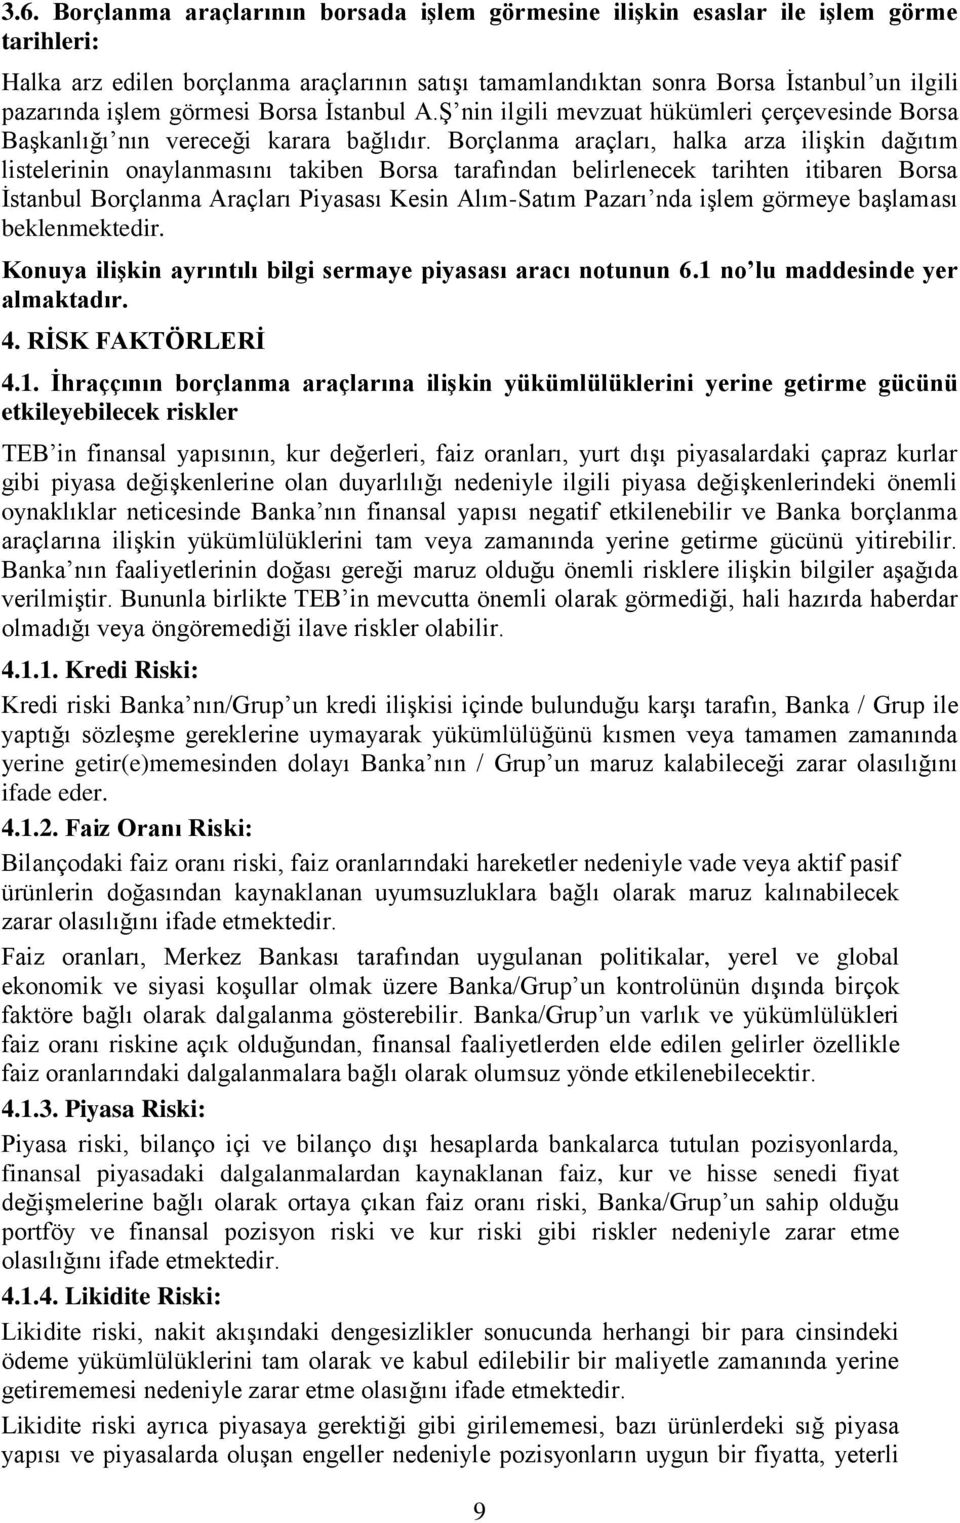 Borçlanma araçları, halka arza ilişkin dağıtım listelerinin onaylanmasını takiben Borsa tarafından belirlenecek tarihten itibaren Borsa İstanbul Borçlanma Araçları Piyasası Kesin Alım-Satım Pazarı